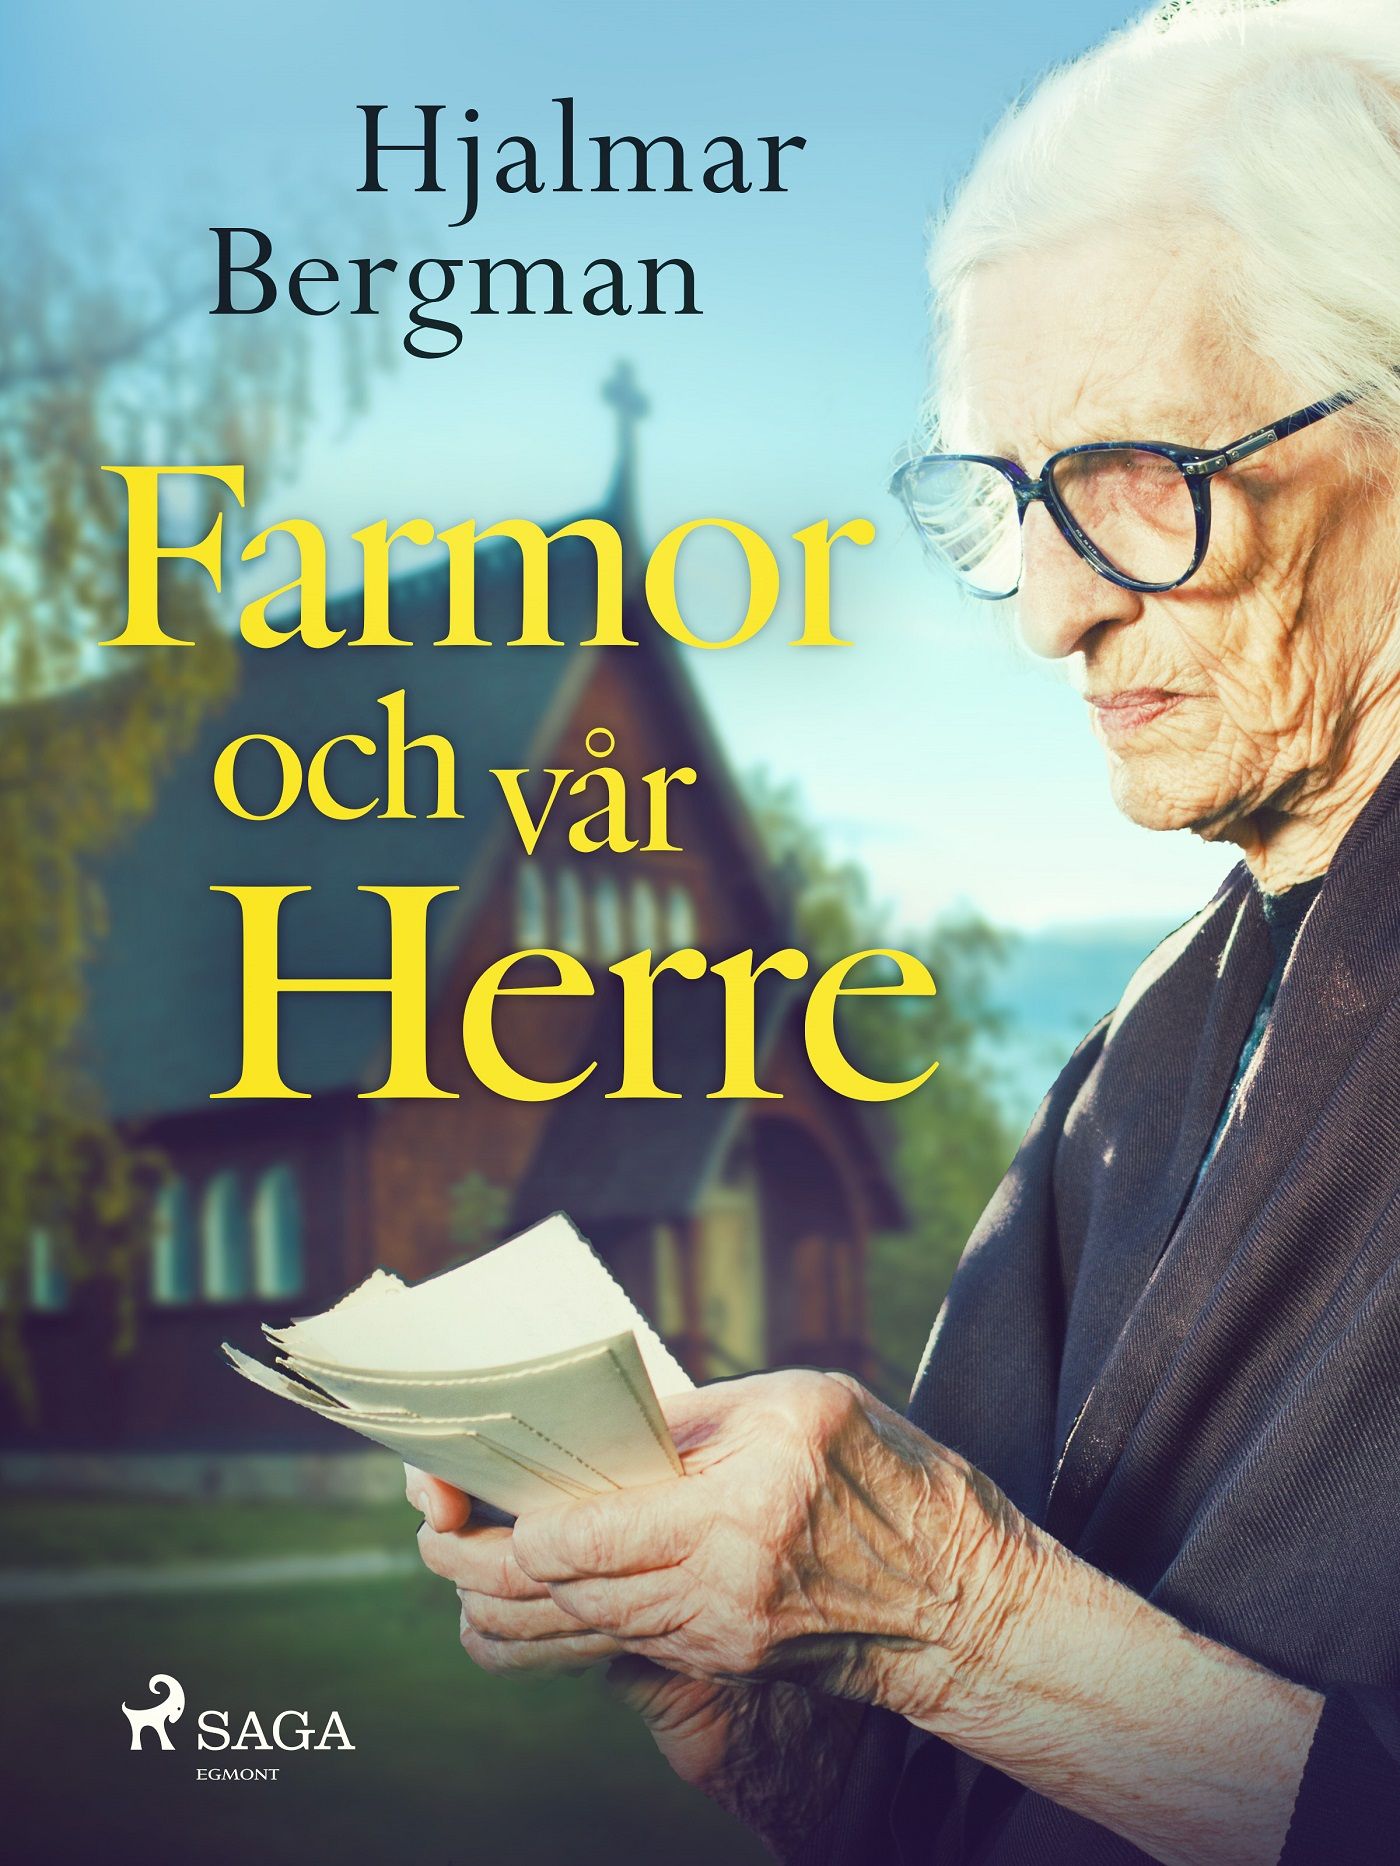 Farmor och vår Herre, e-bok av Hjalmar  Bergman